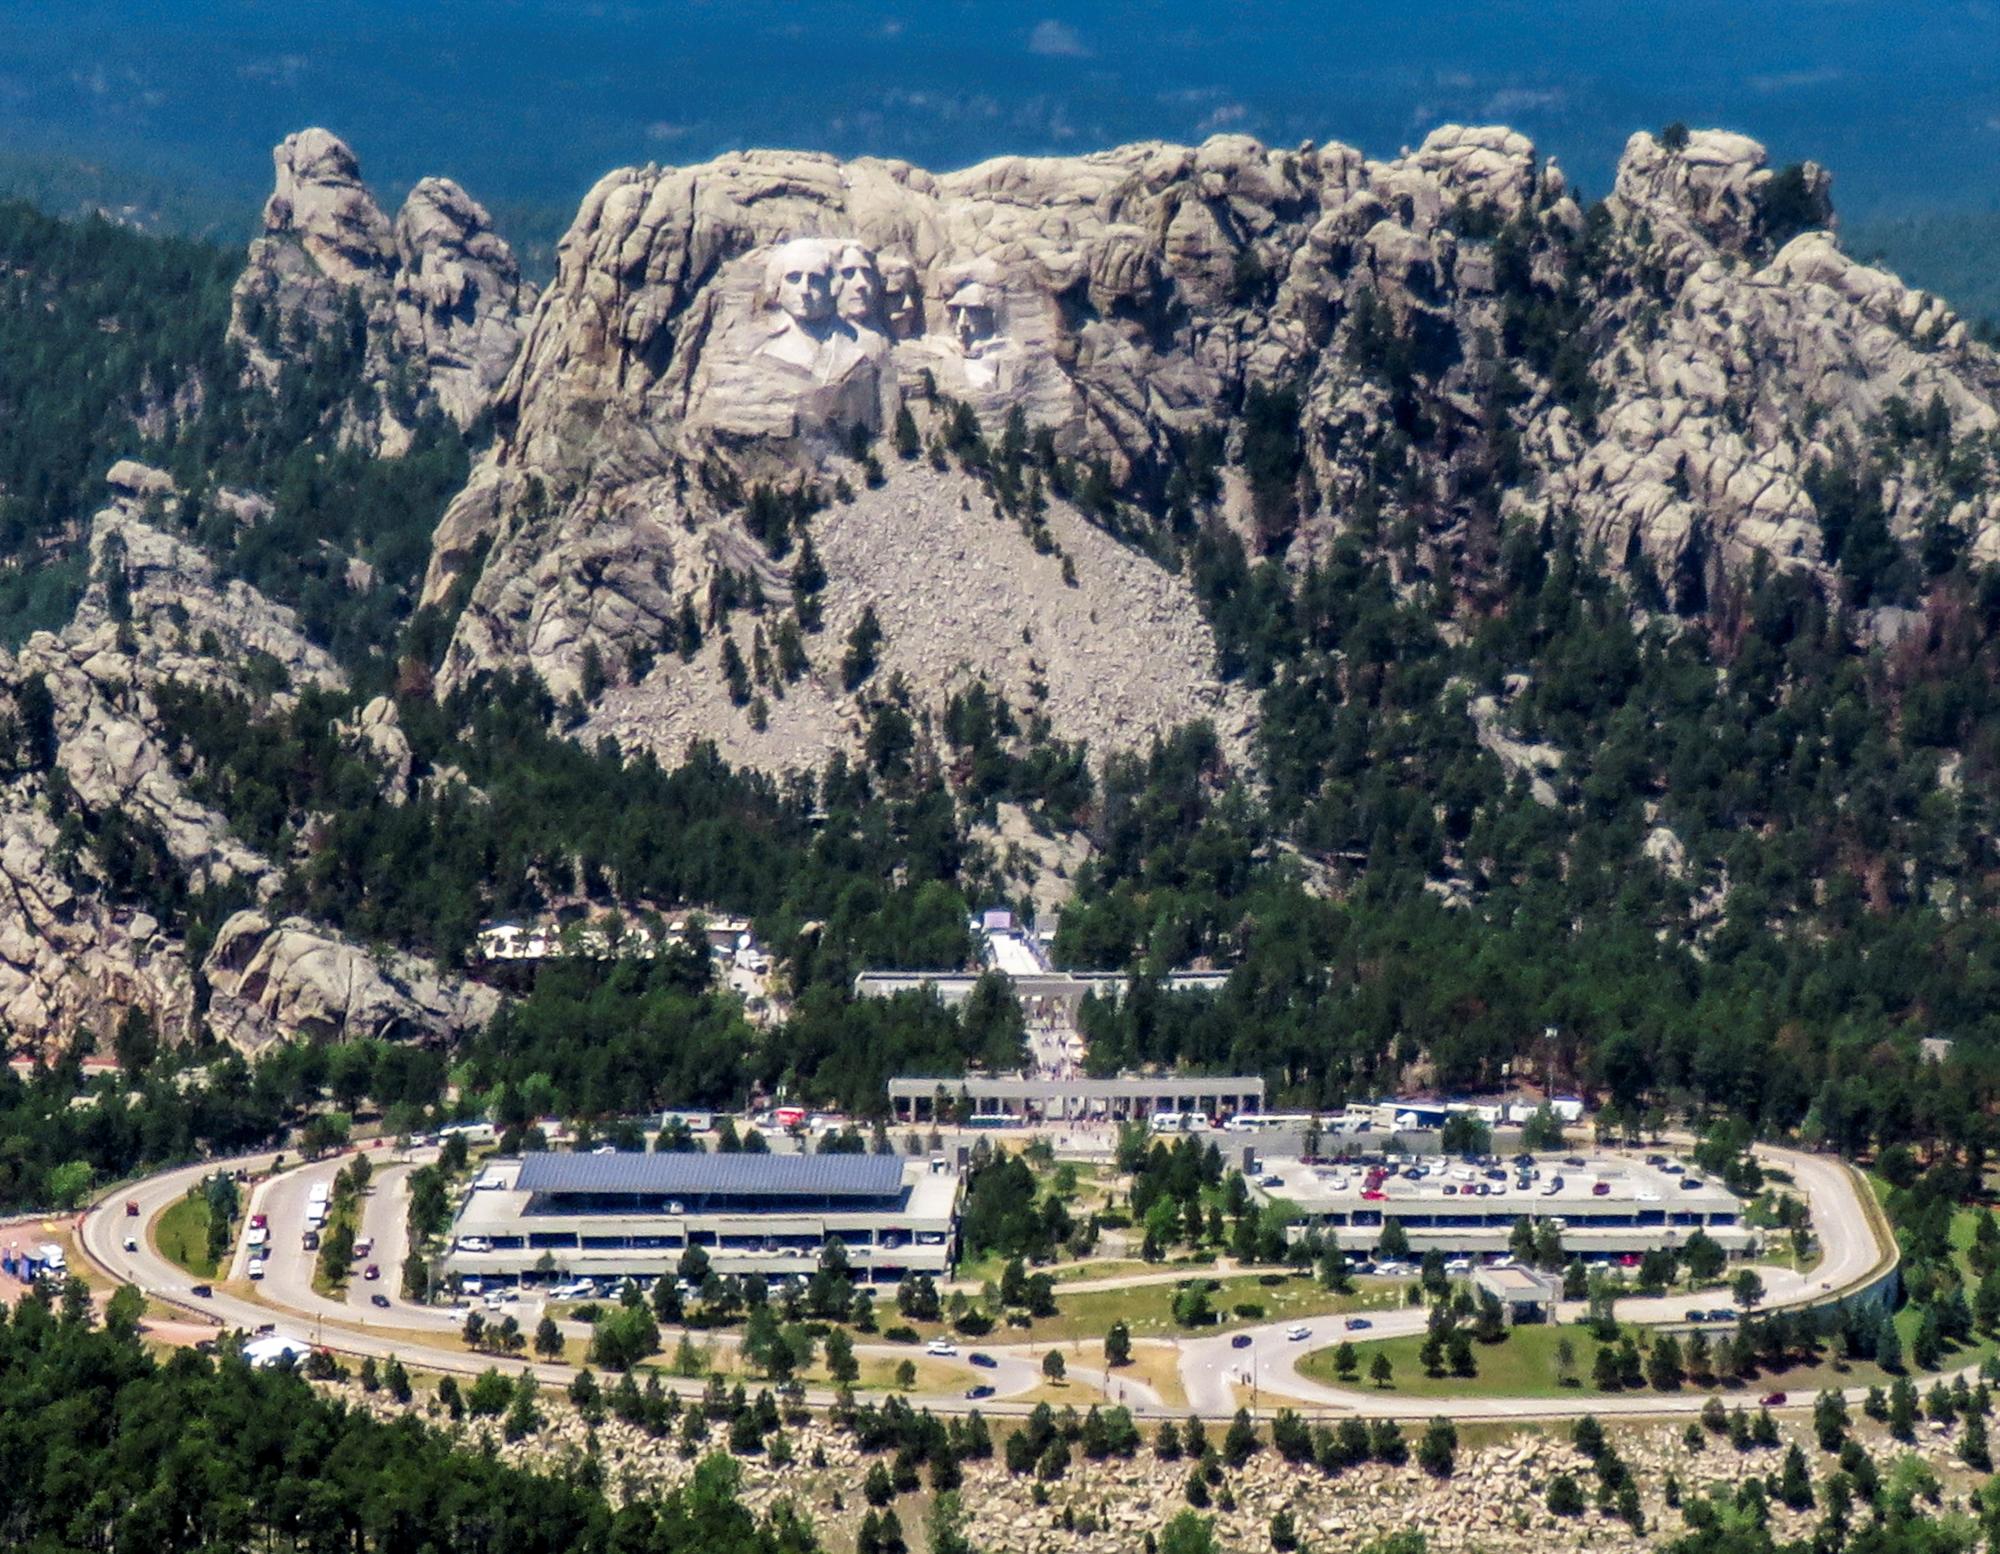 Una vista aérea del monumento en el Monte Rushmore captada desde un helicóptero antes de la visita del presidente Donald Trump, en el marco de la conmemoración de la independencia de los Estados Unidos (EFE/EPA/TANNEN MAURY)